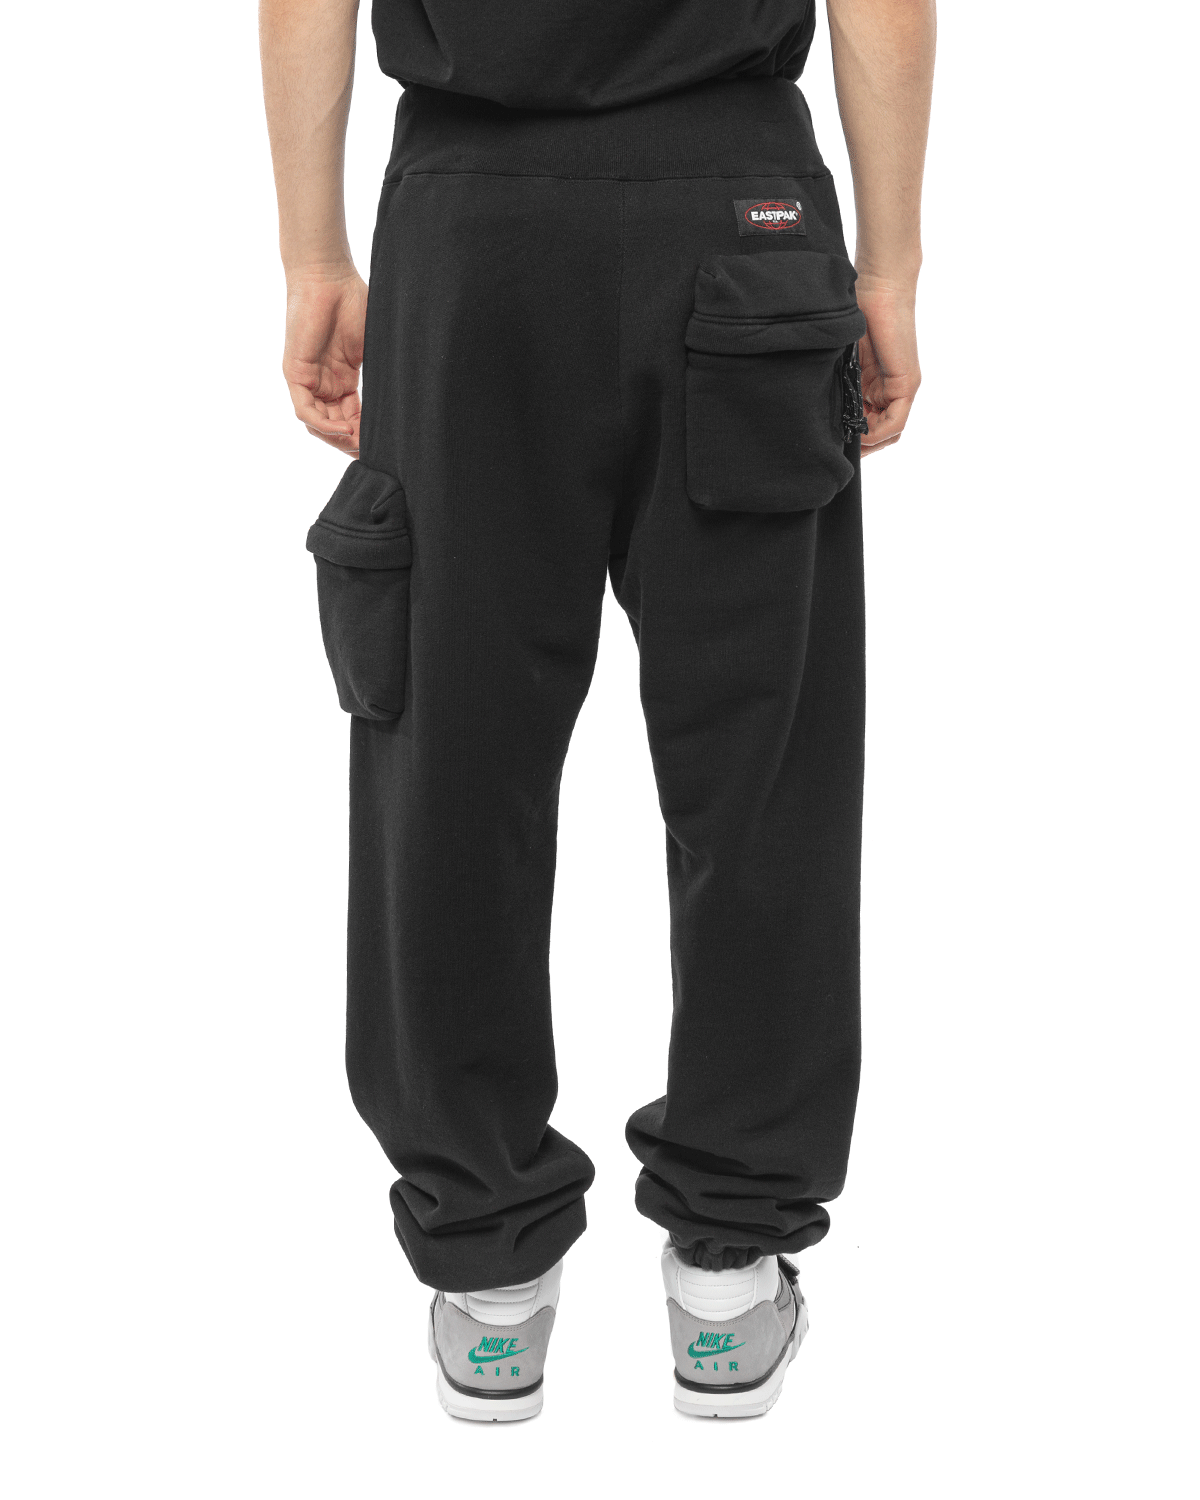 UC1B4502-1 Eastpak Sweatpants Black